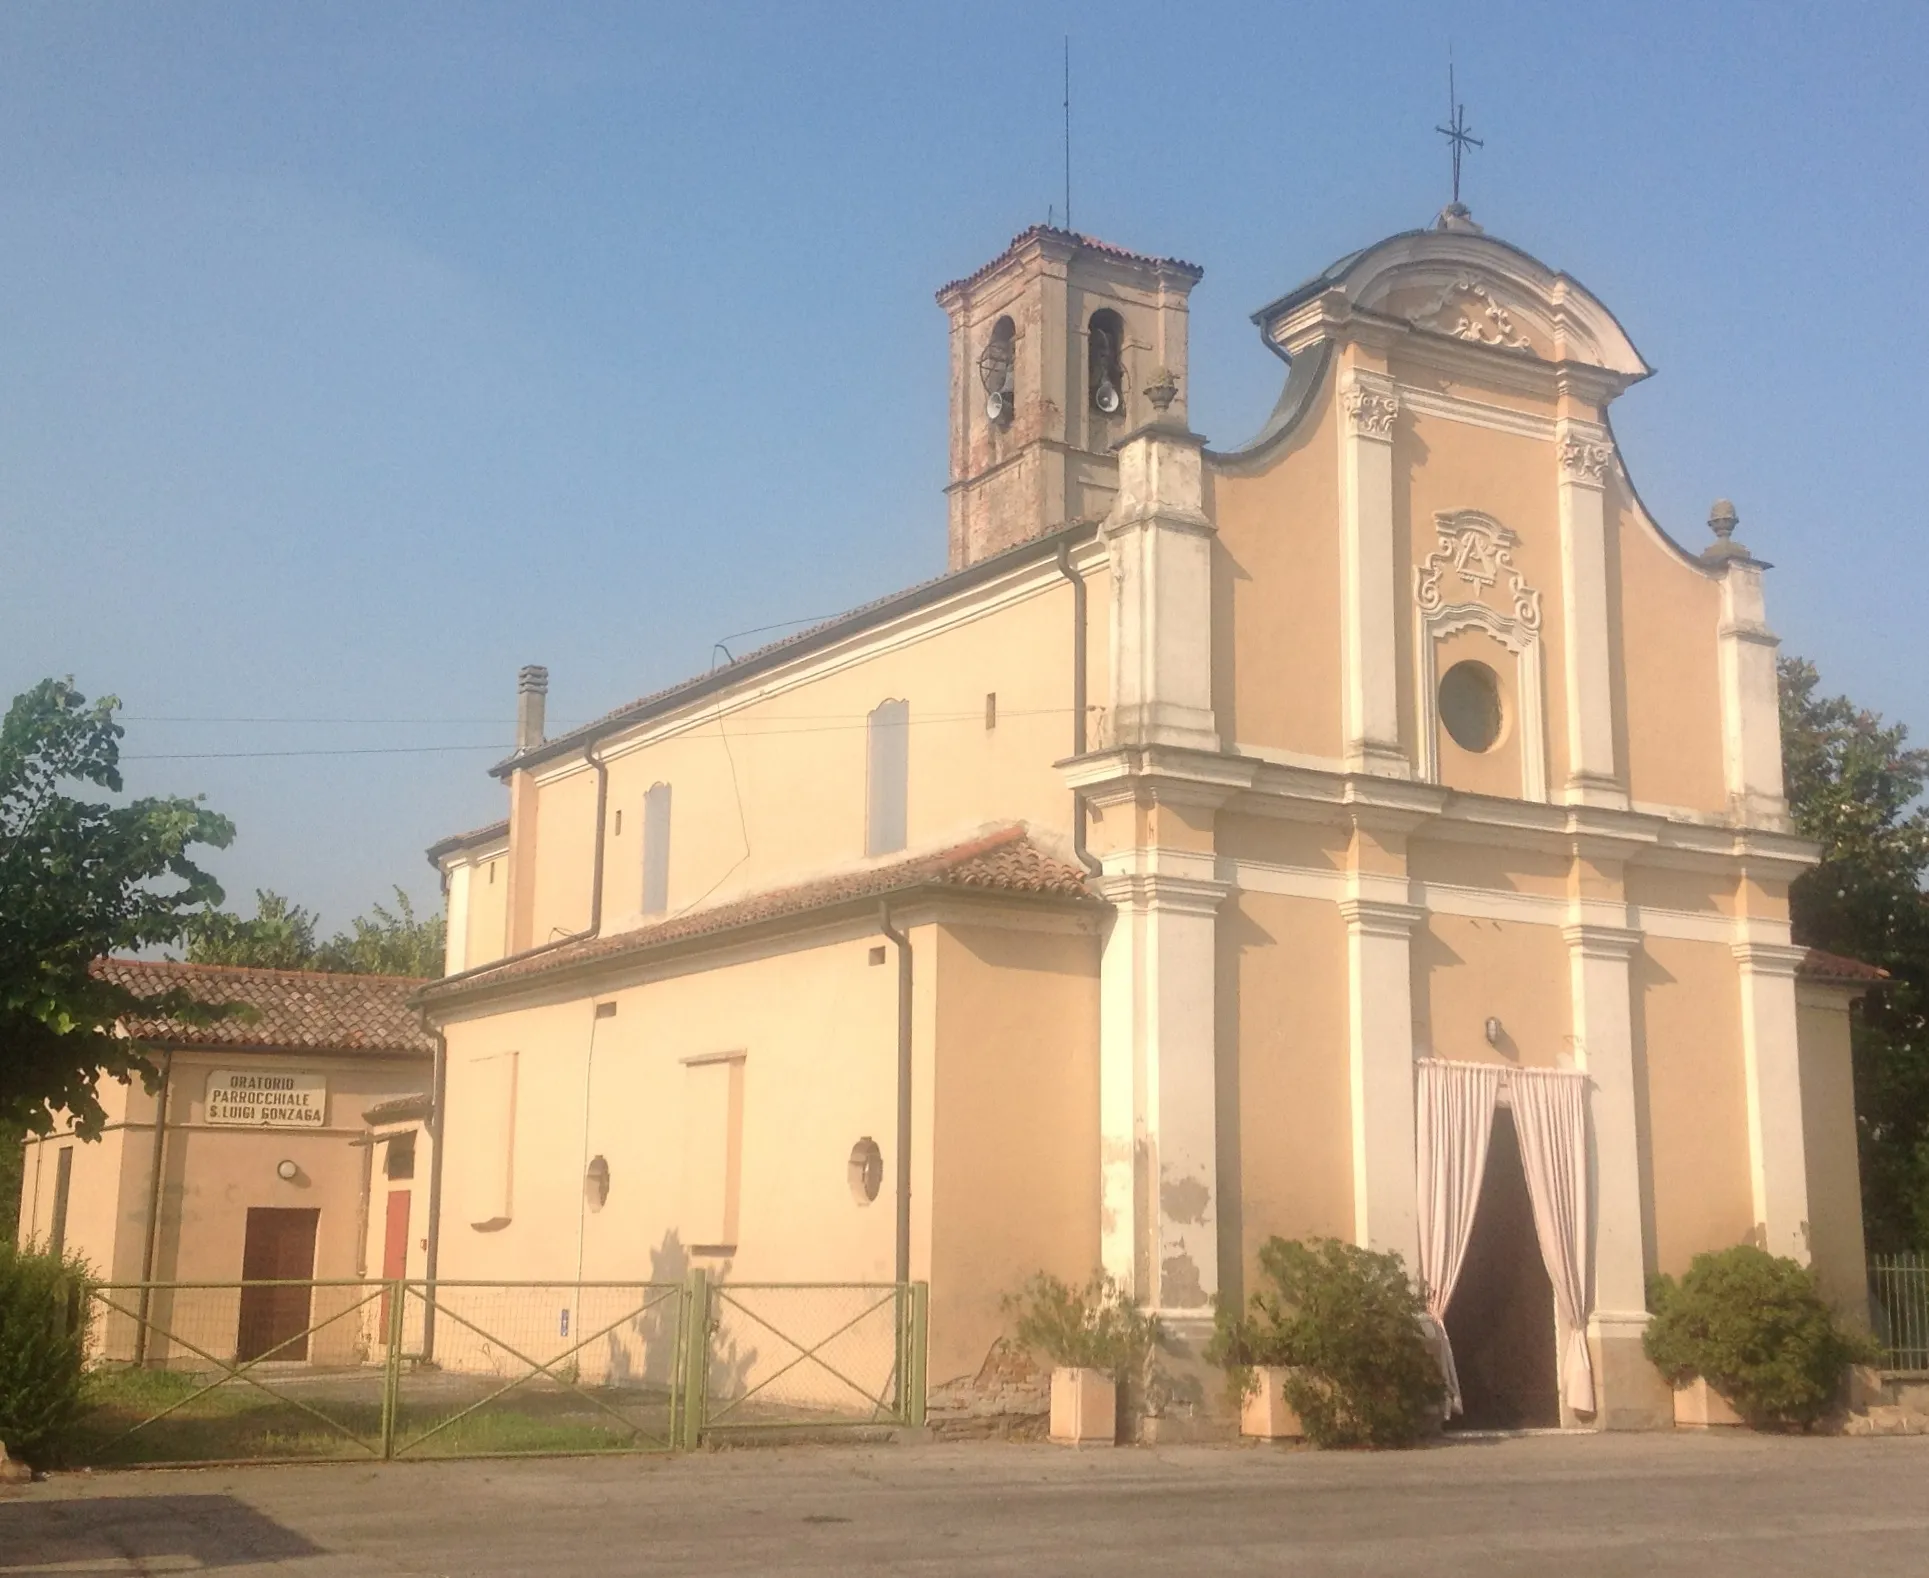 Photo showing: L'autore è FranzK e riproduce la chiesa di Nosedole in comune di Roncoferraro e in provincia di Mantova.